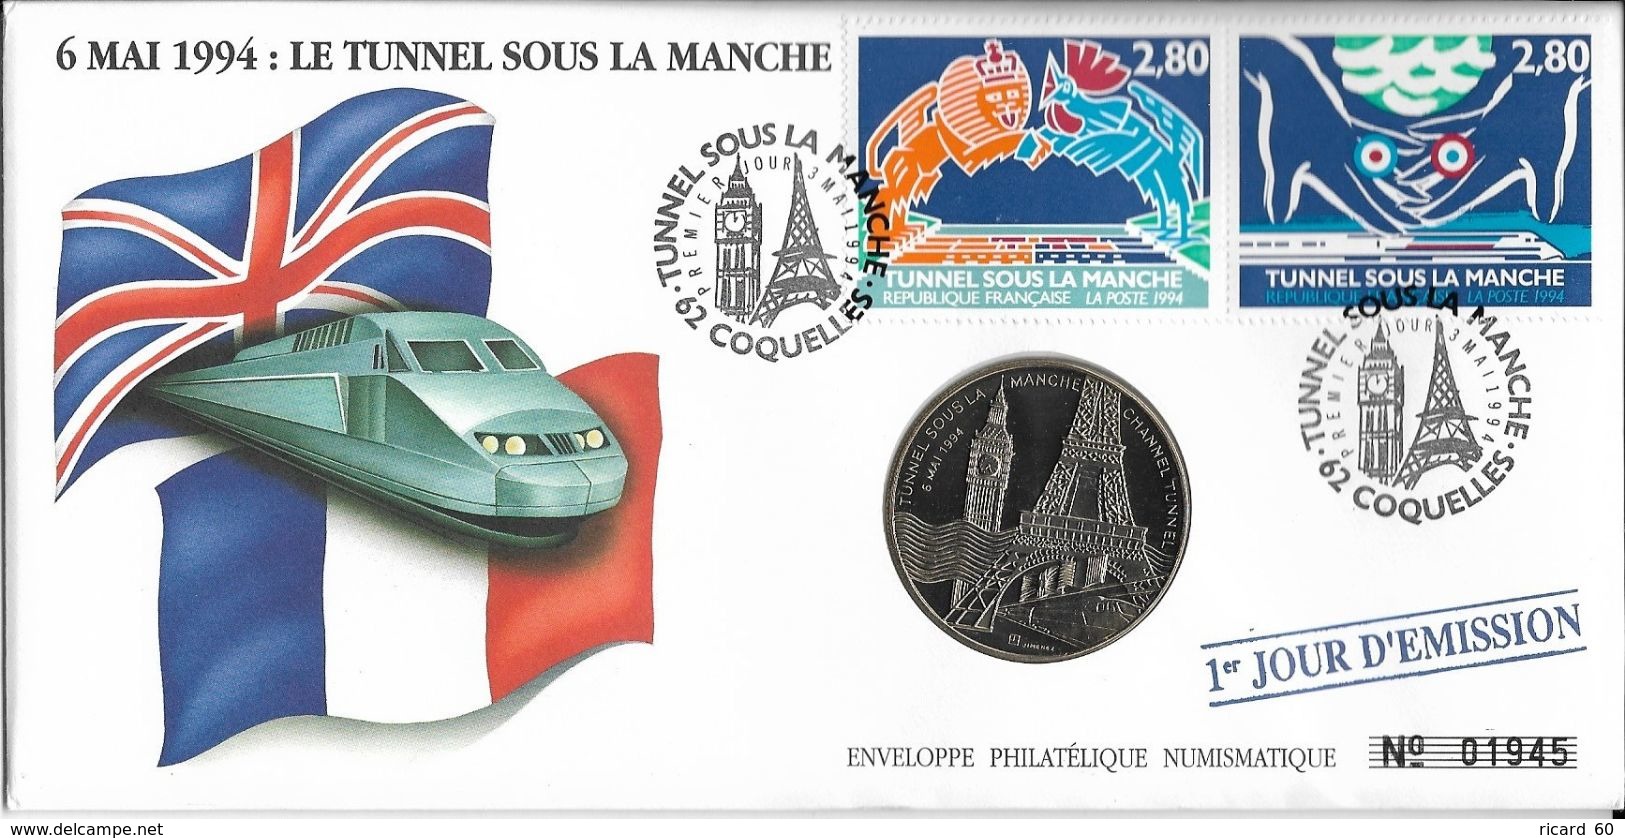 Grande Env Fdc Numismatique, 3/5/94 Coquelles,N°2880-1, Tunnel Sous La Manche, Tour Eiffel, Train, Big Ben - 1990-1999